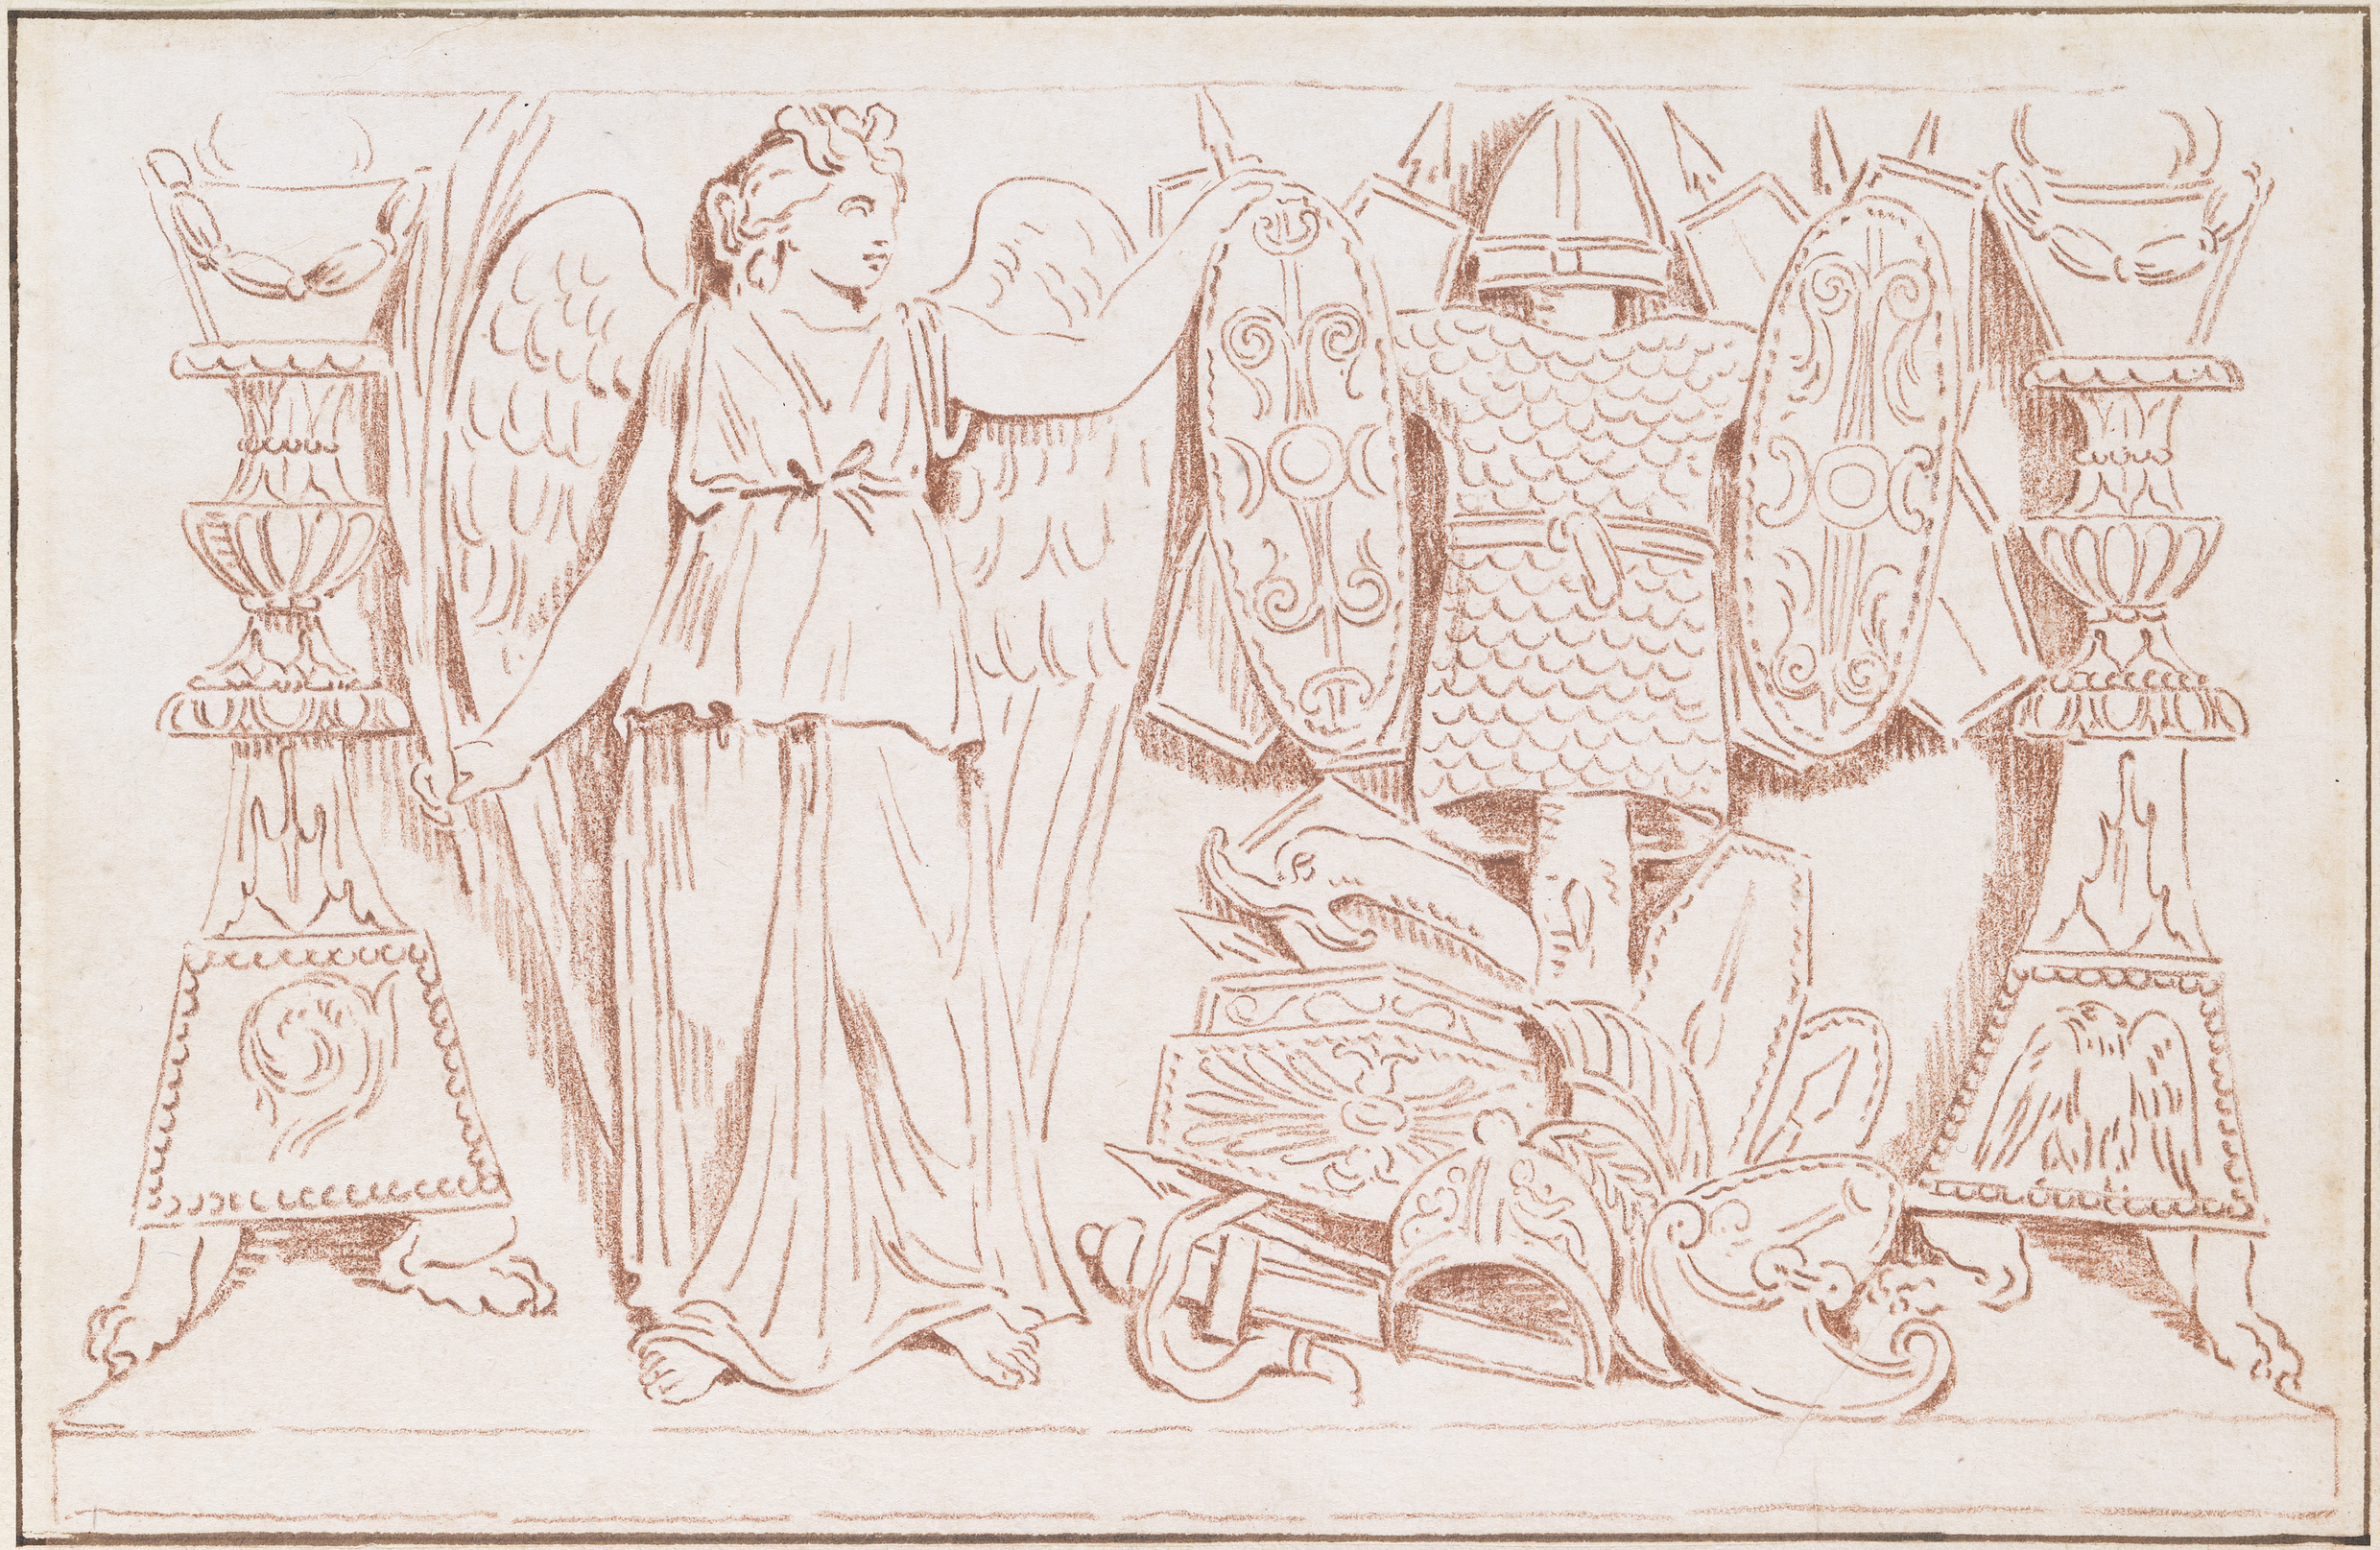 Rötel-Zeichnung eines Relief mit Ornamenten und einer Figur.